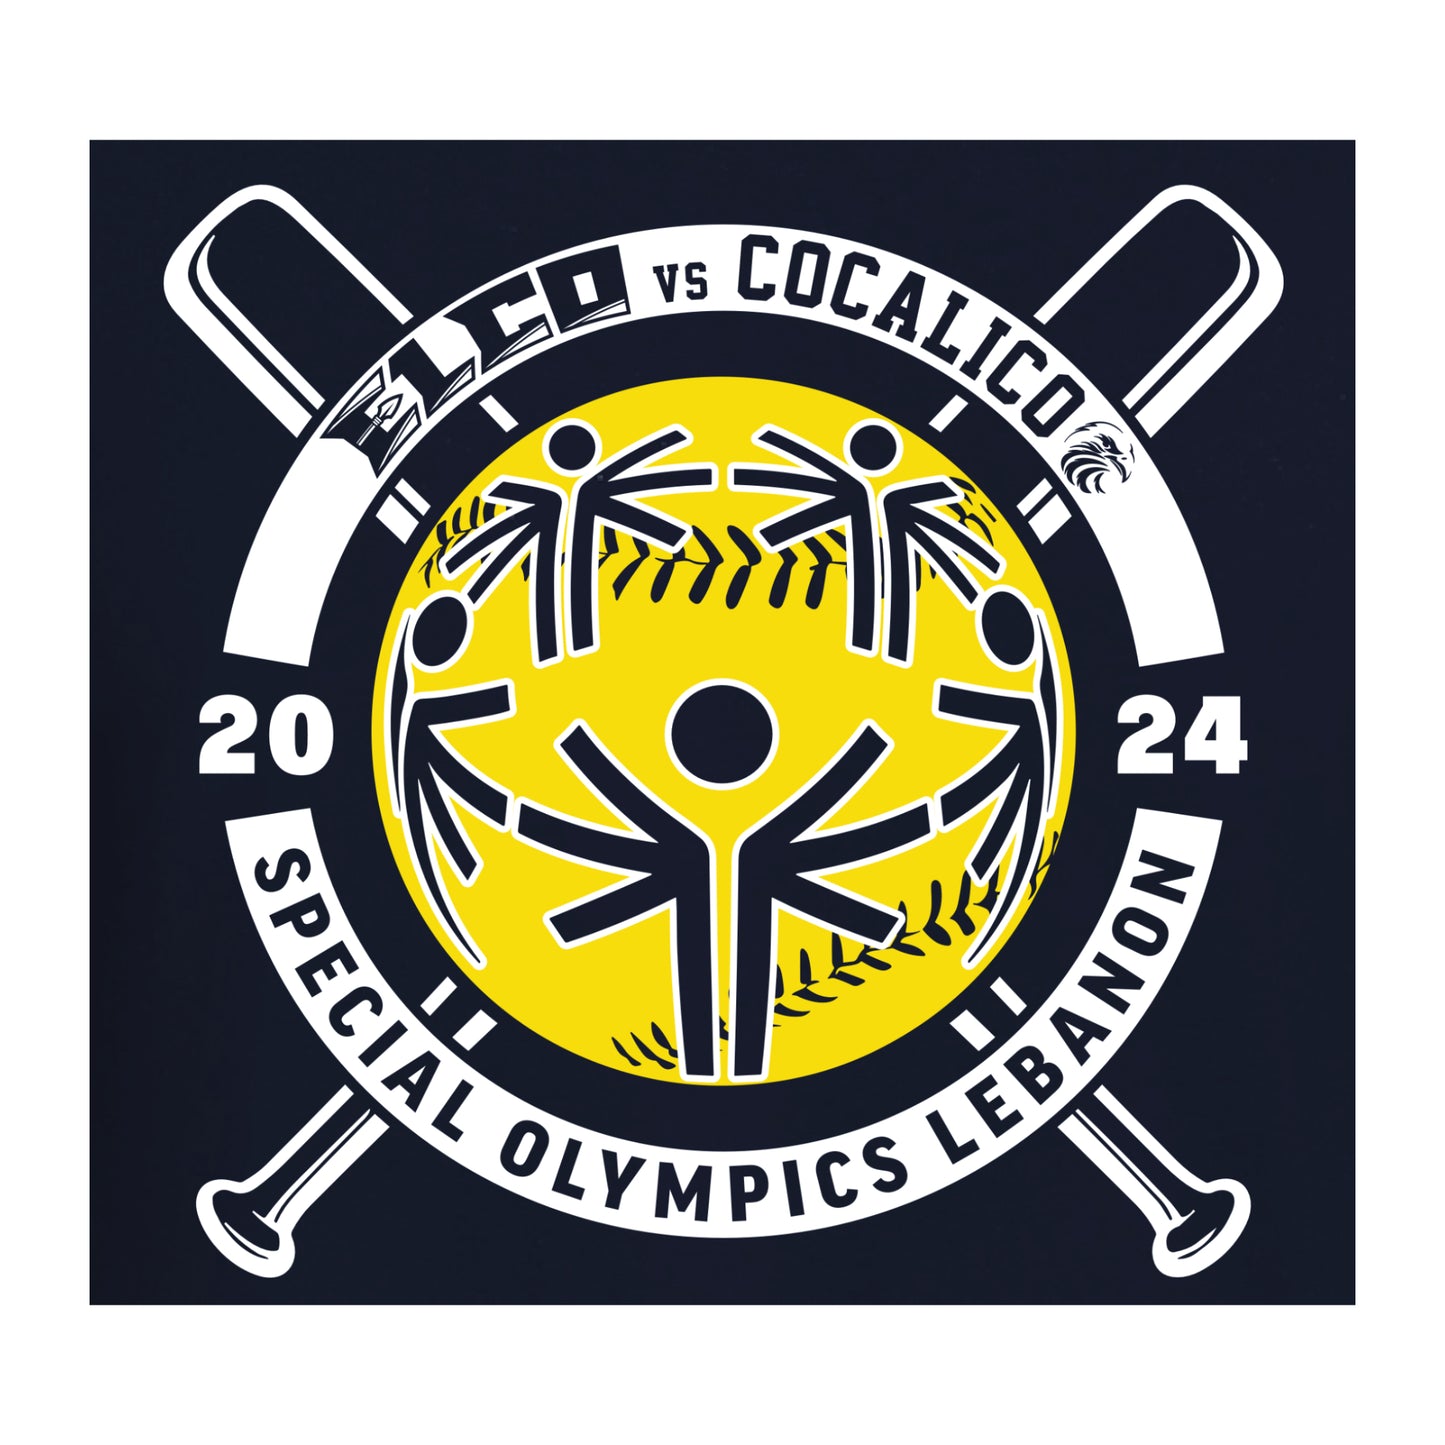 24577-1 Navy Special Olympics Fundraiser Tee